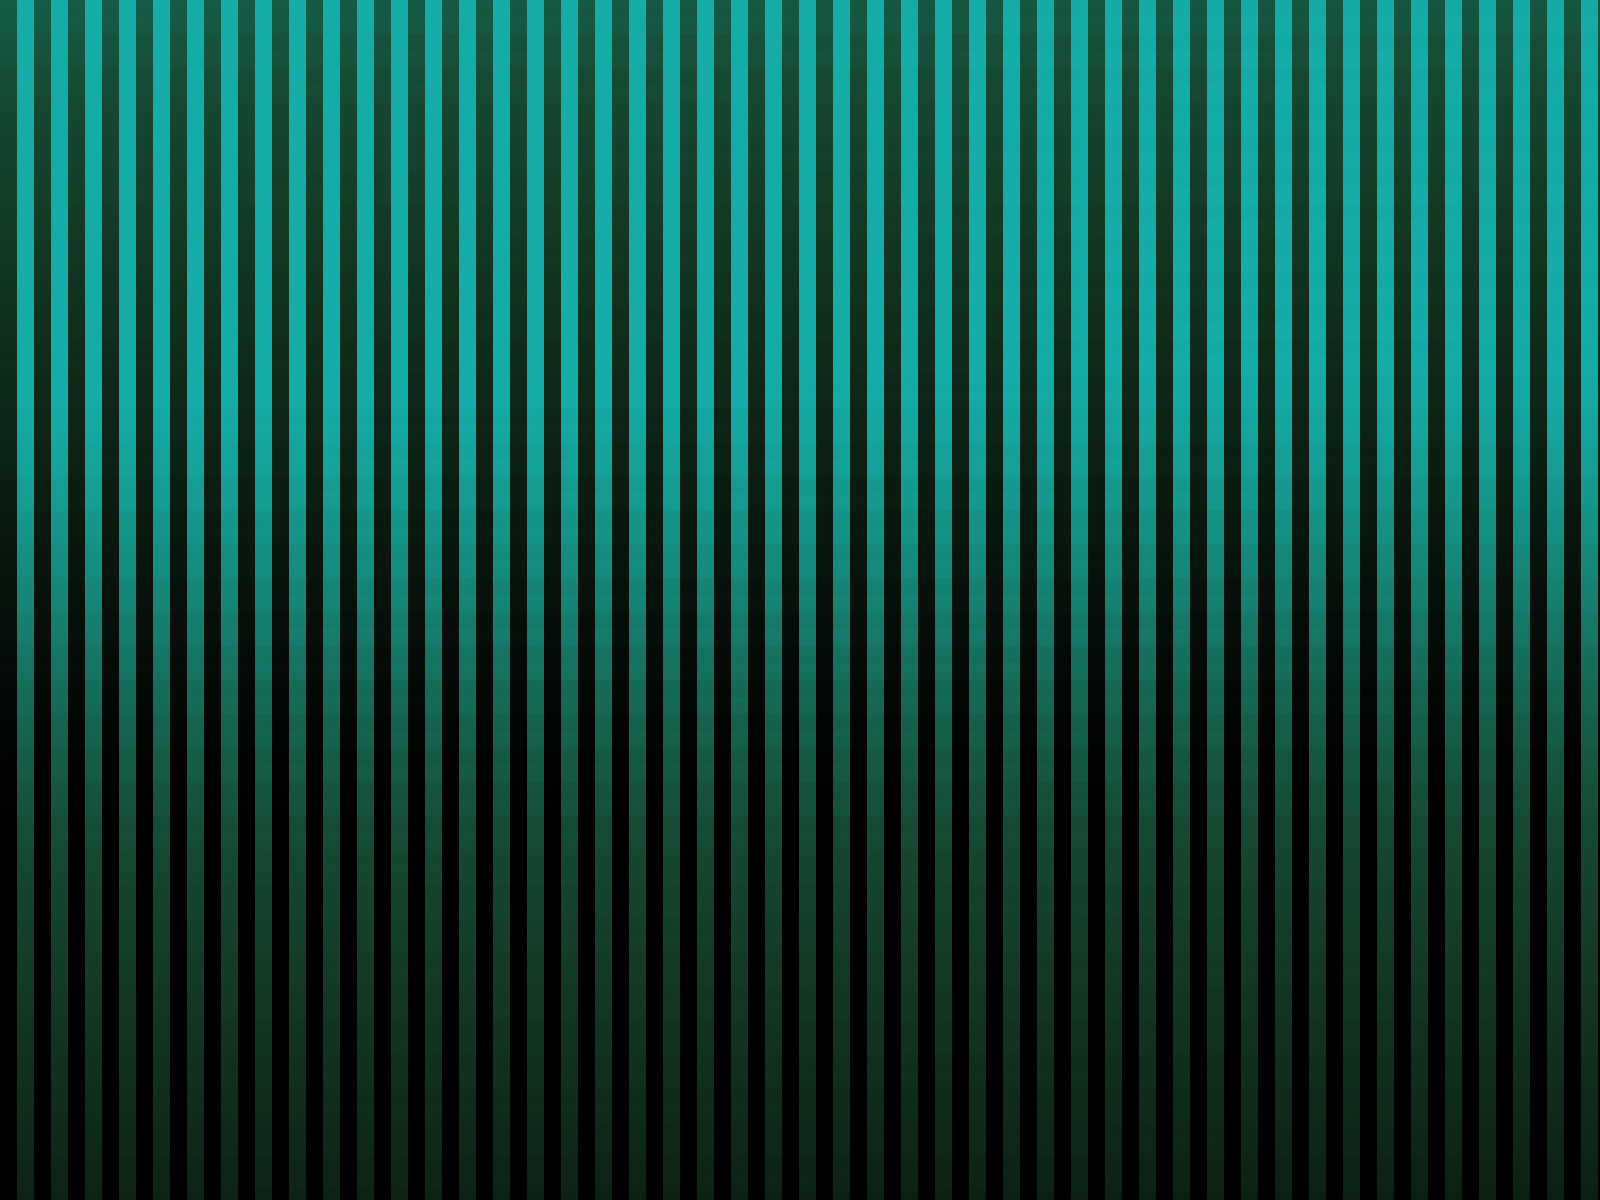 Sh Yn Design: Stripe Pattern - Black Line